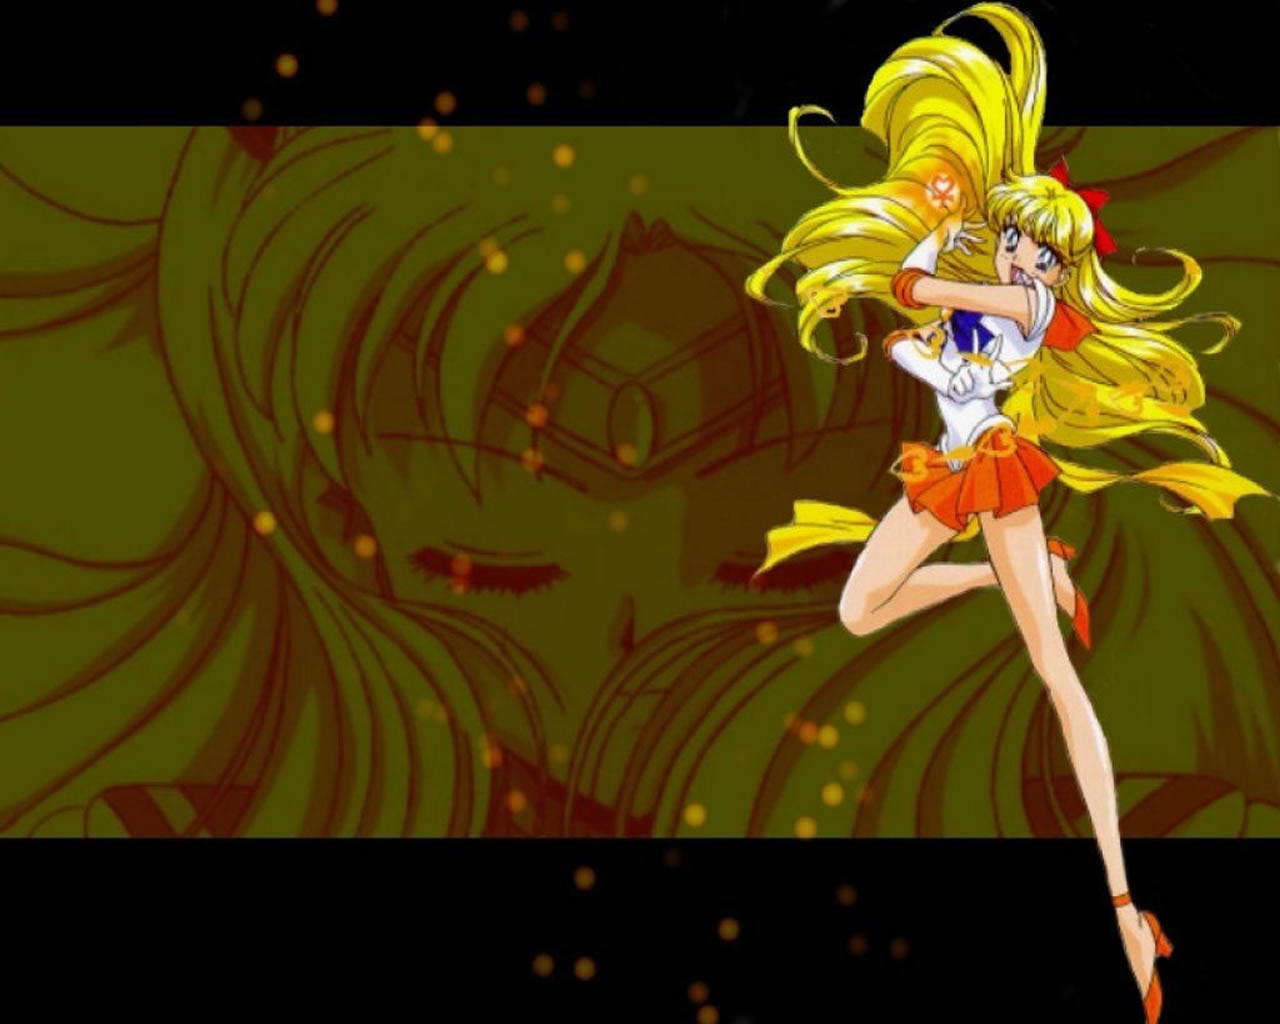 download wallpaper: Sailor Moon – groen wallpaper